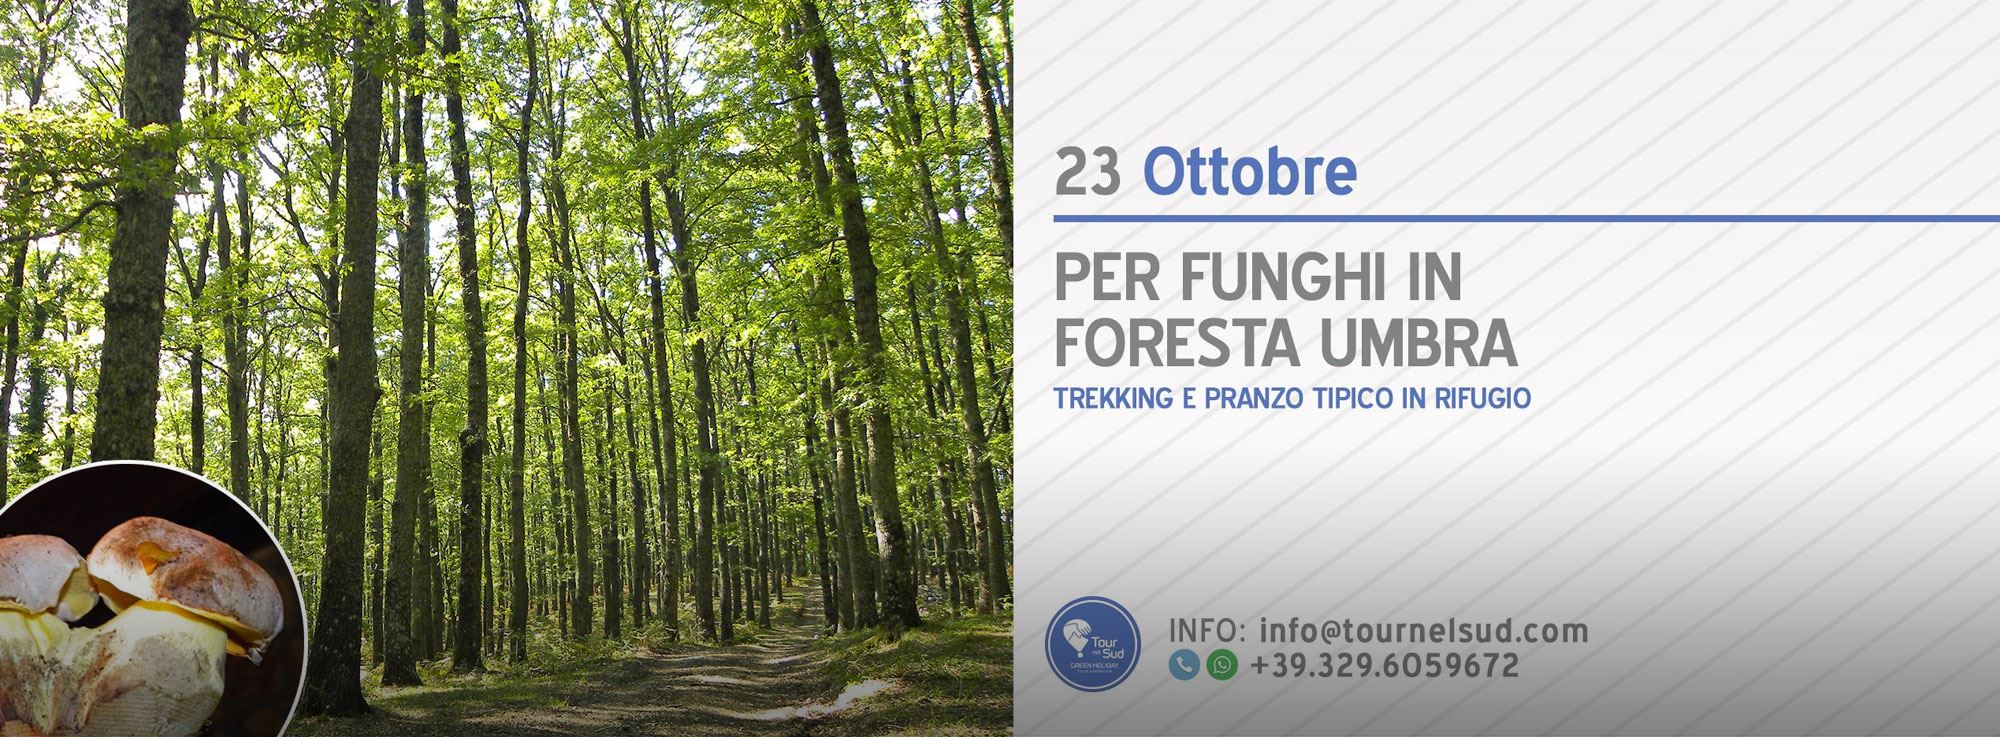 Foresta Umbra: Per funghi in Foresta Umbra